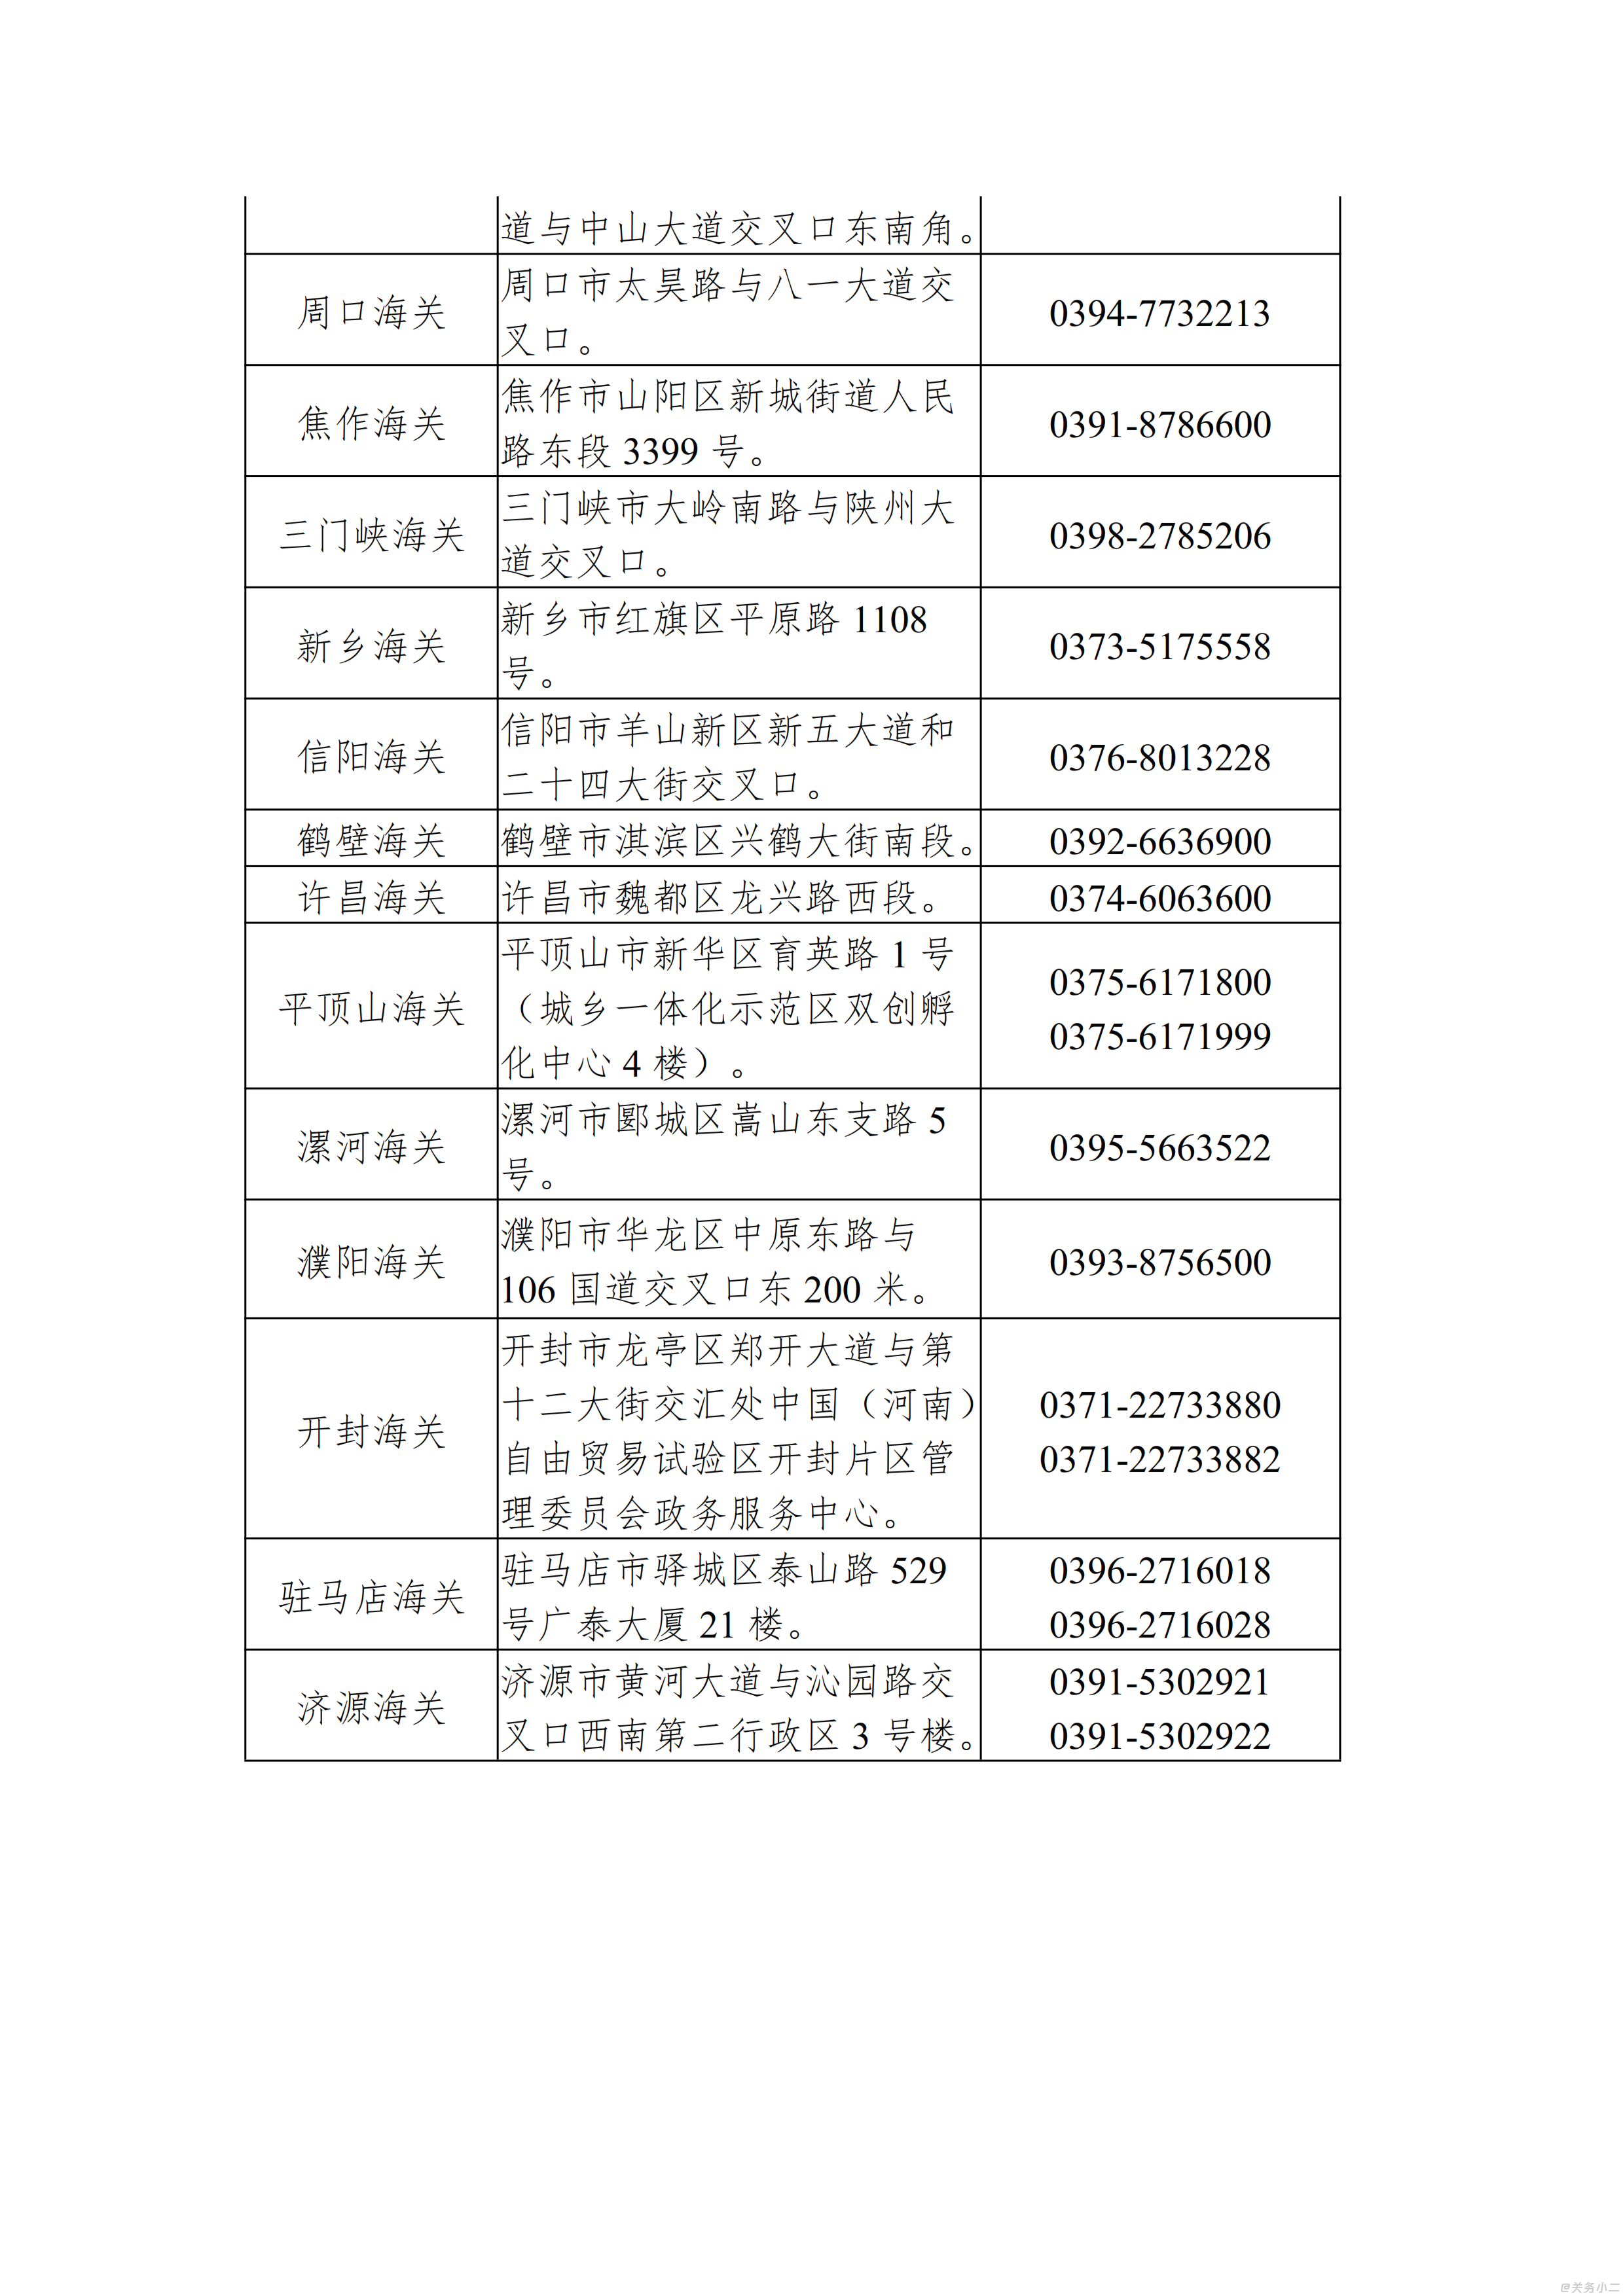 郑州海关各业务现场办公地址及联系方式_002.png